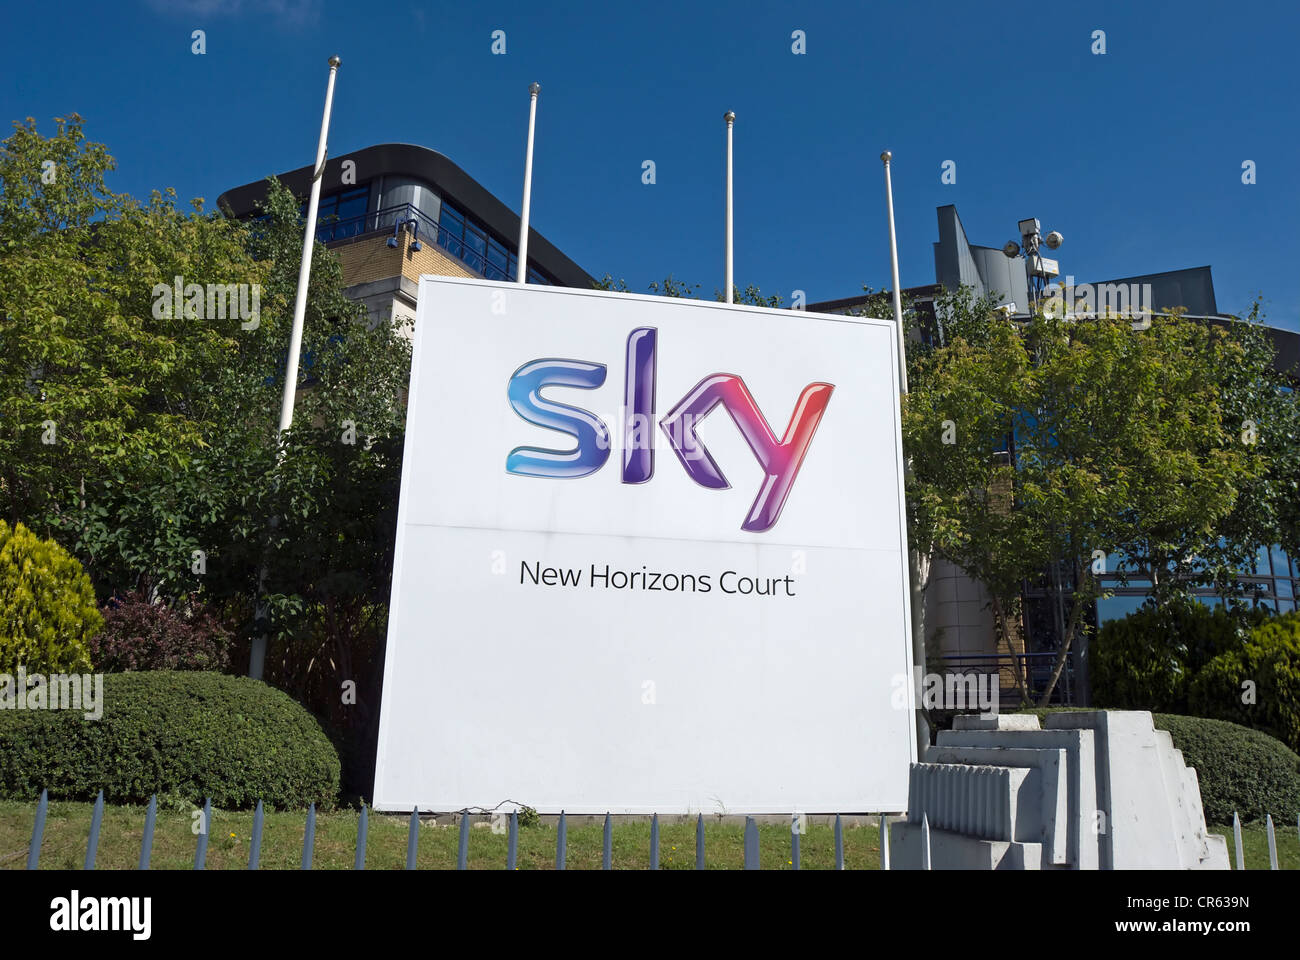 Nuevos horizontes corte, retratada cuando aún formaba parte de la sede de sky tv, Isleworth, en el oeste de Londres, Inglaterra Foto de stock